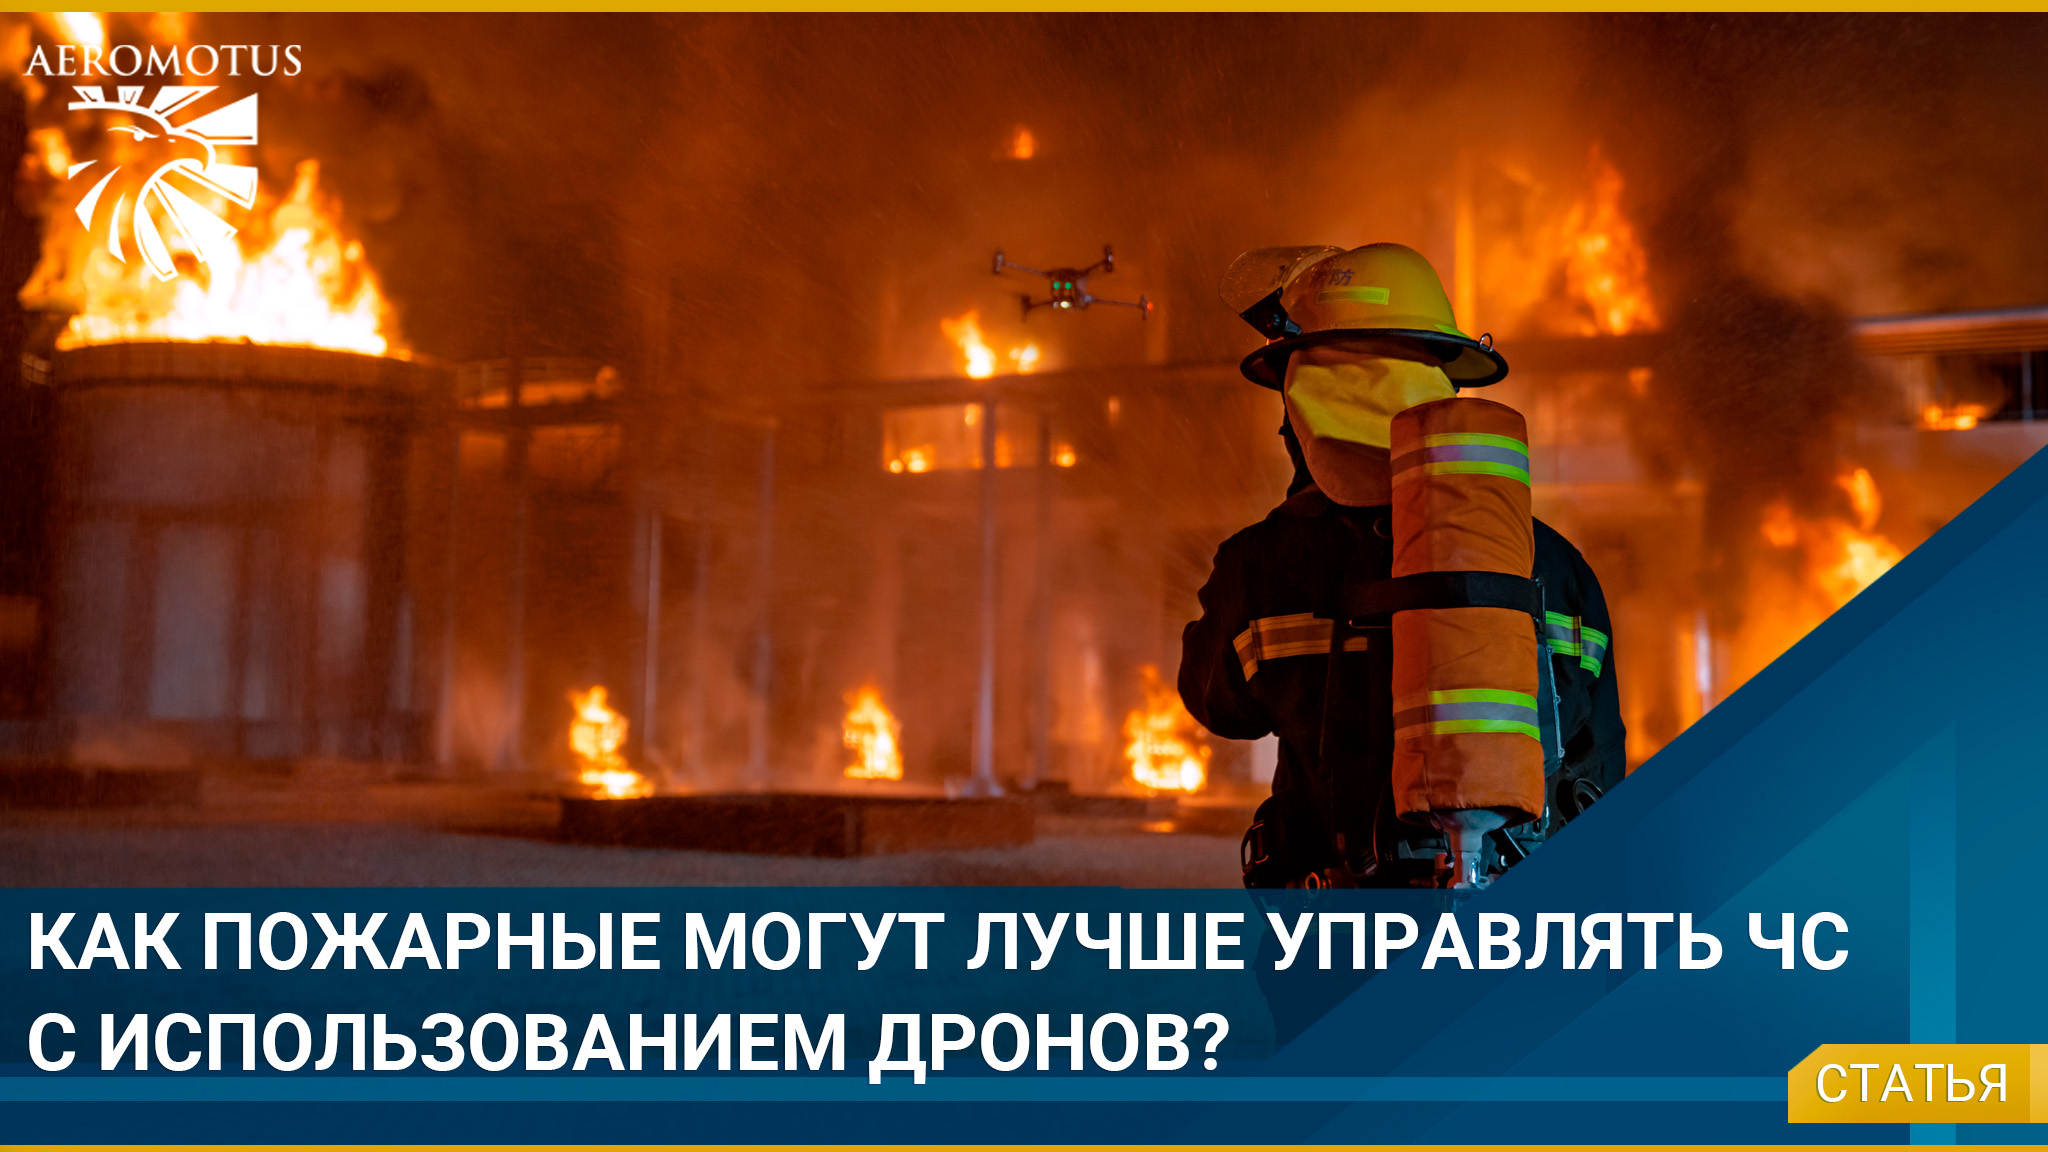 Как пожарные могут лучше управлять чрезвычайными ситуациями с использованием дронов? - Лесное хозяйство